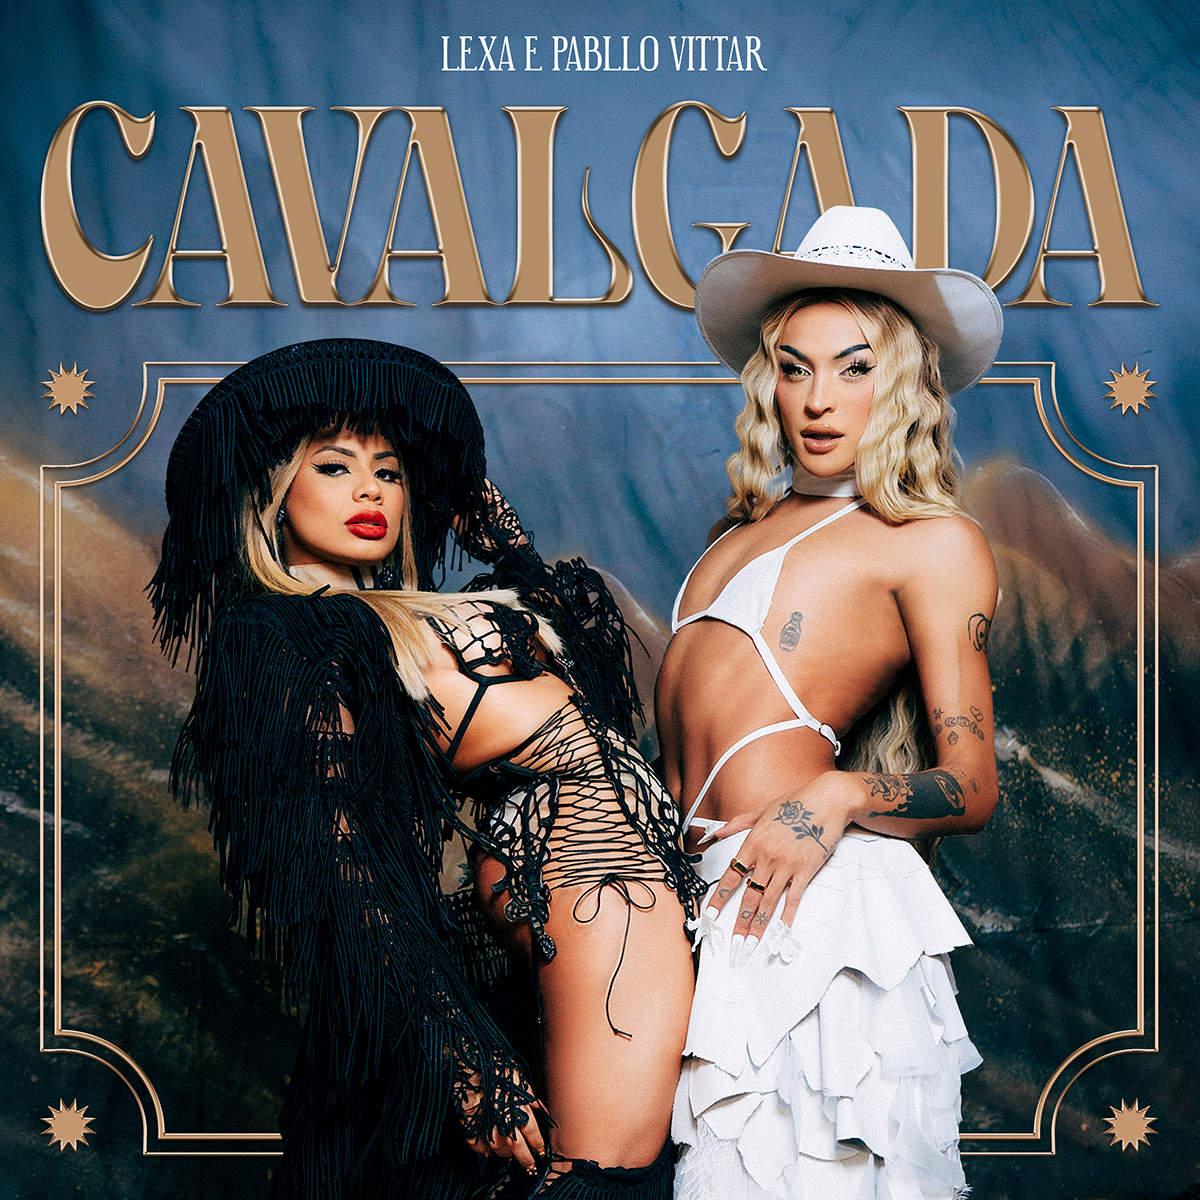 Brasil cover diva lexa music pabllo vittar pop